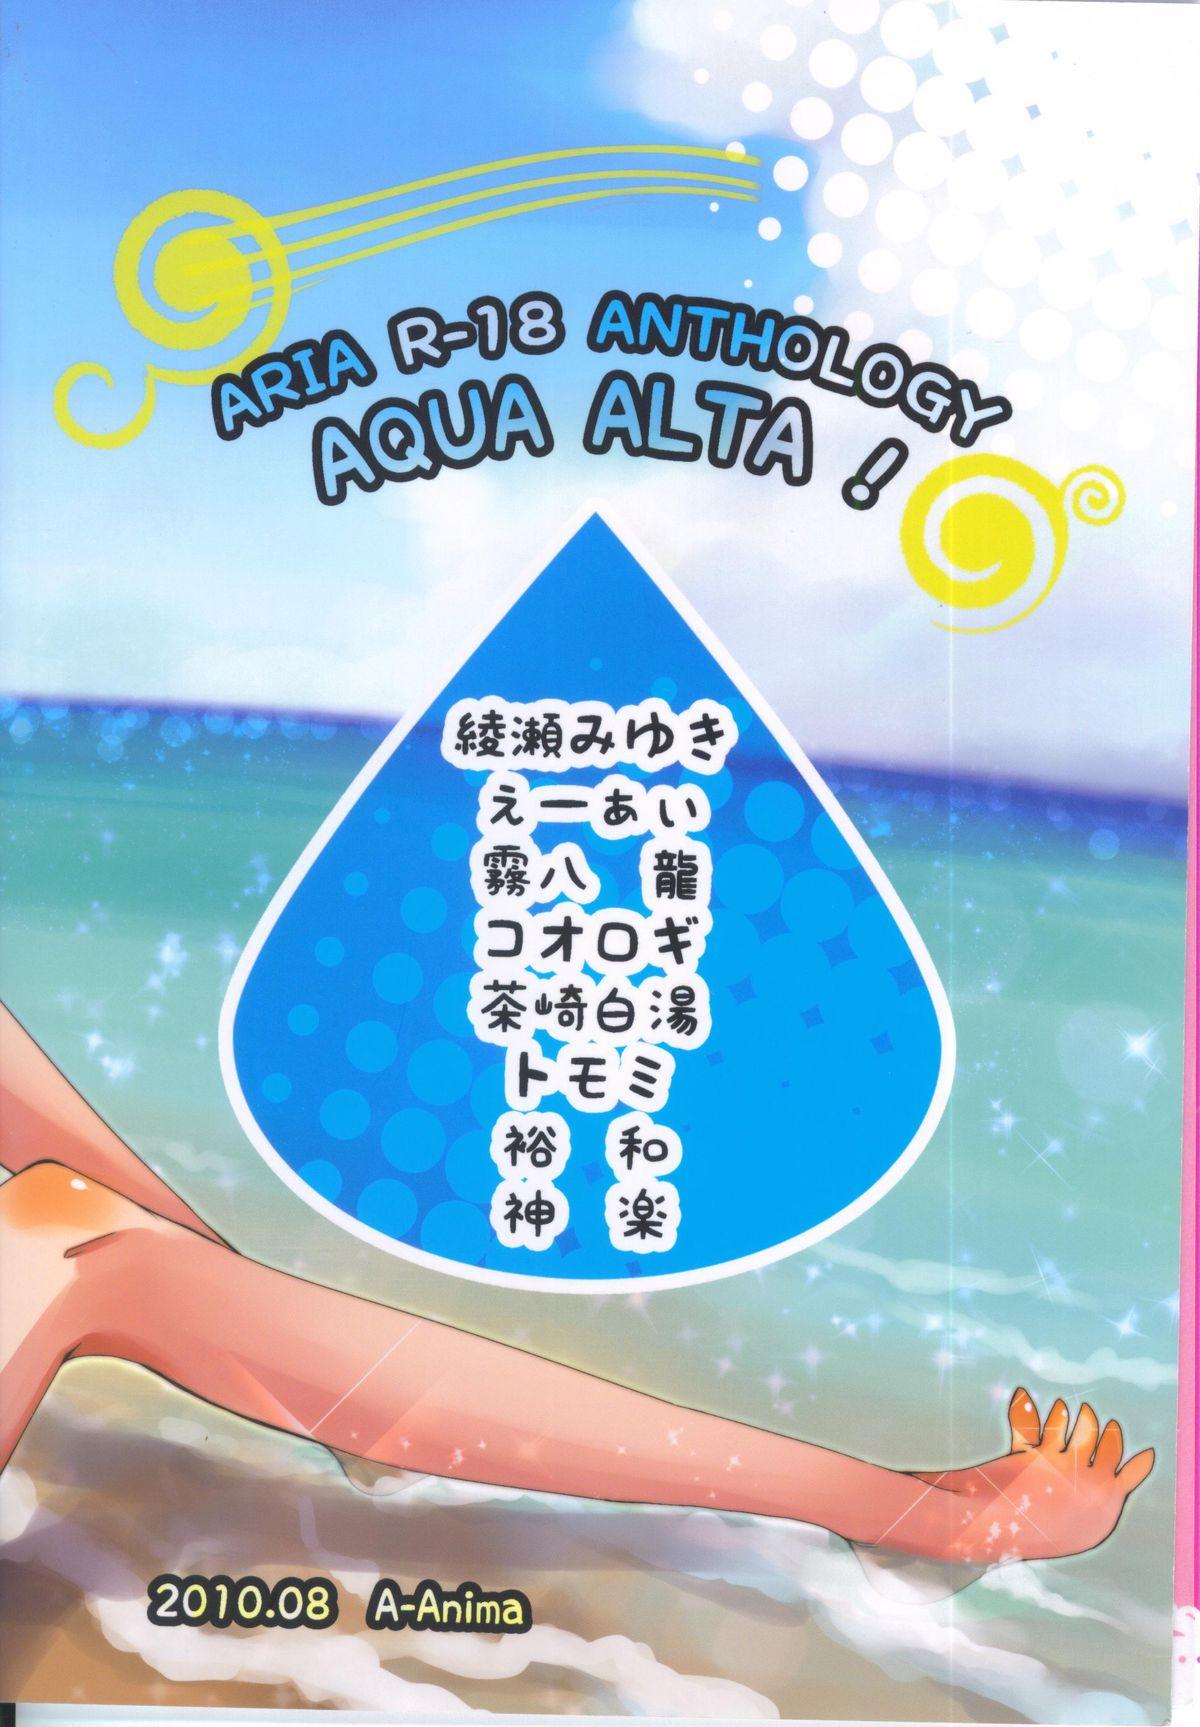 Aqua Alta! 56